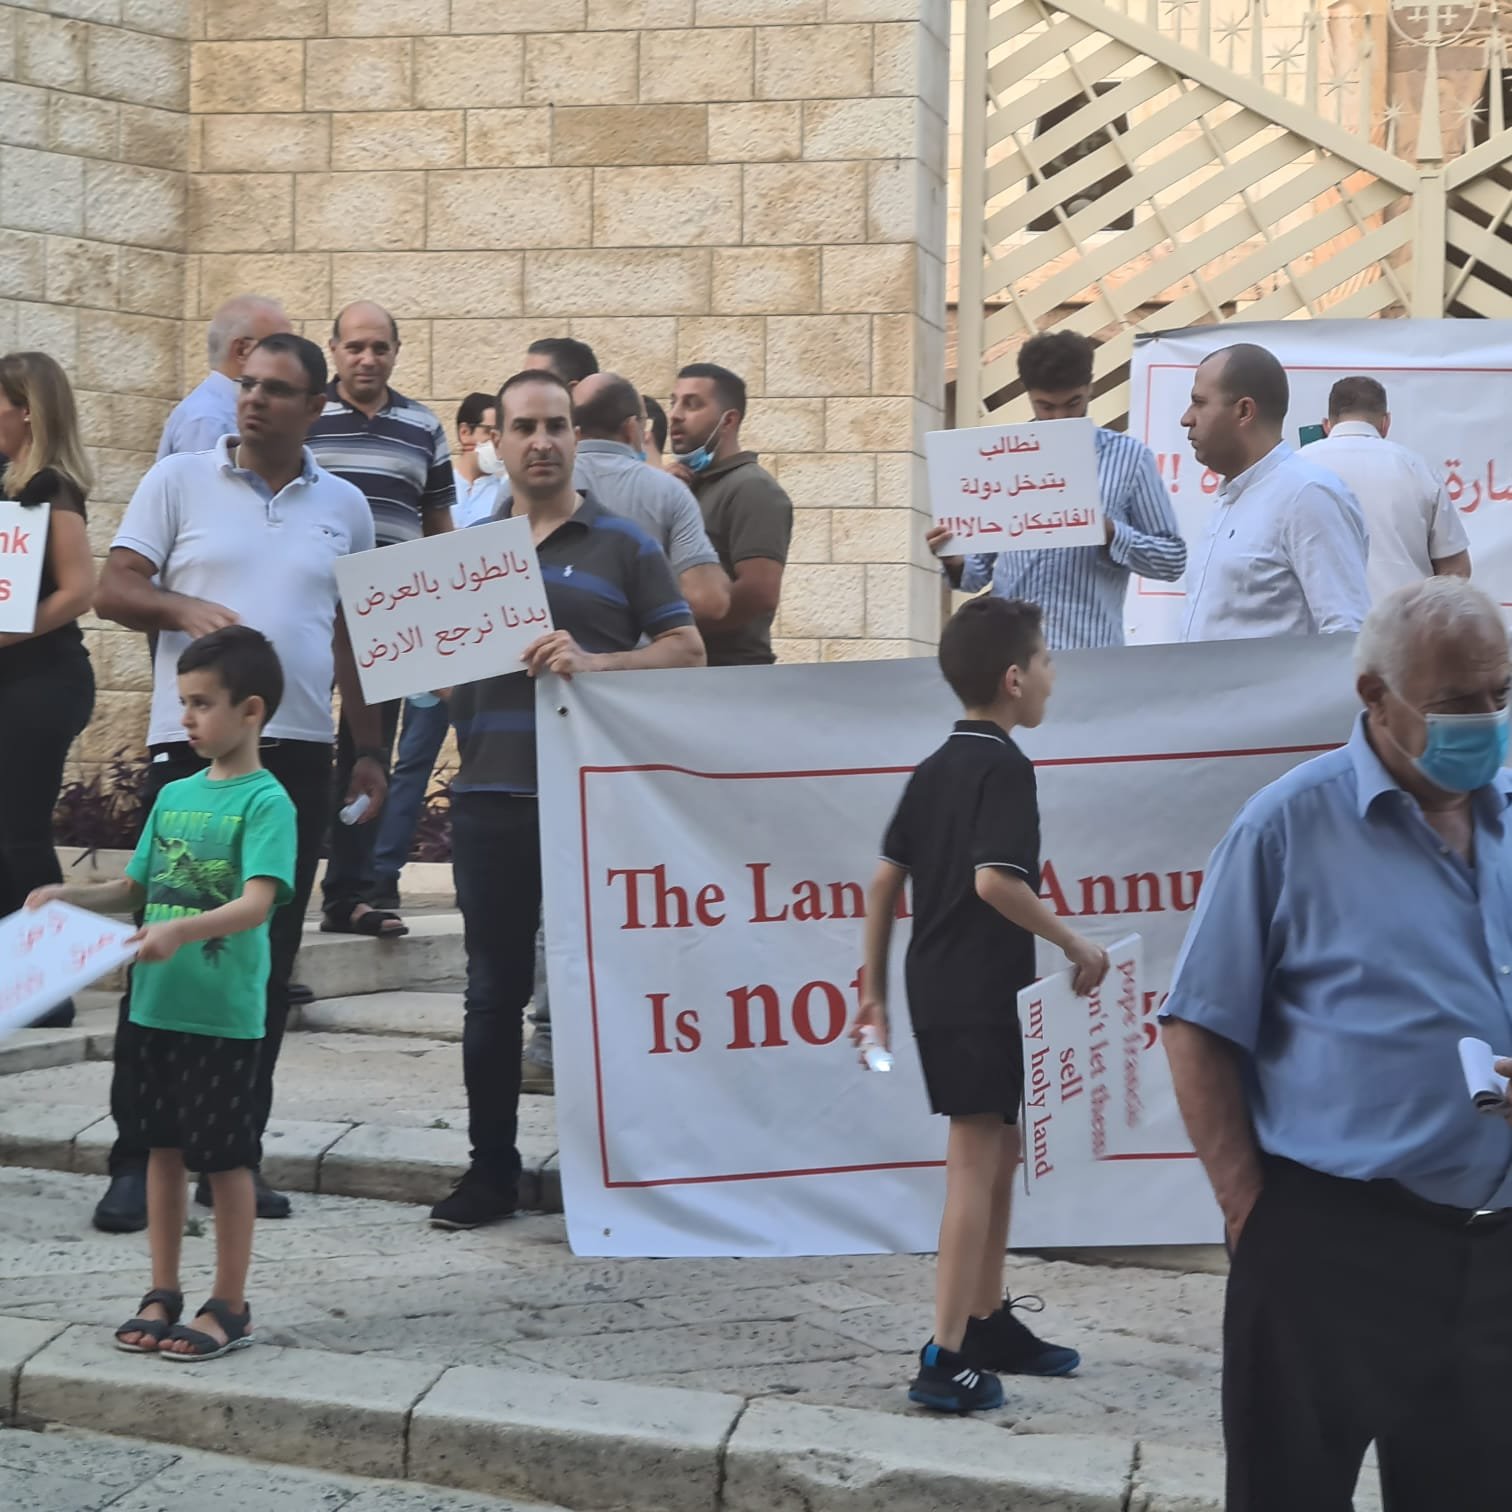 مباشر، الناصرة: مسيرة شموع وتظاهرة احتجاجية ضد صفقات بيع الاراضي بعنوان "ارض البشارة مش للتجارة"-13